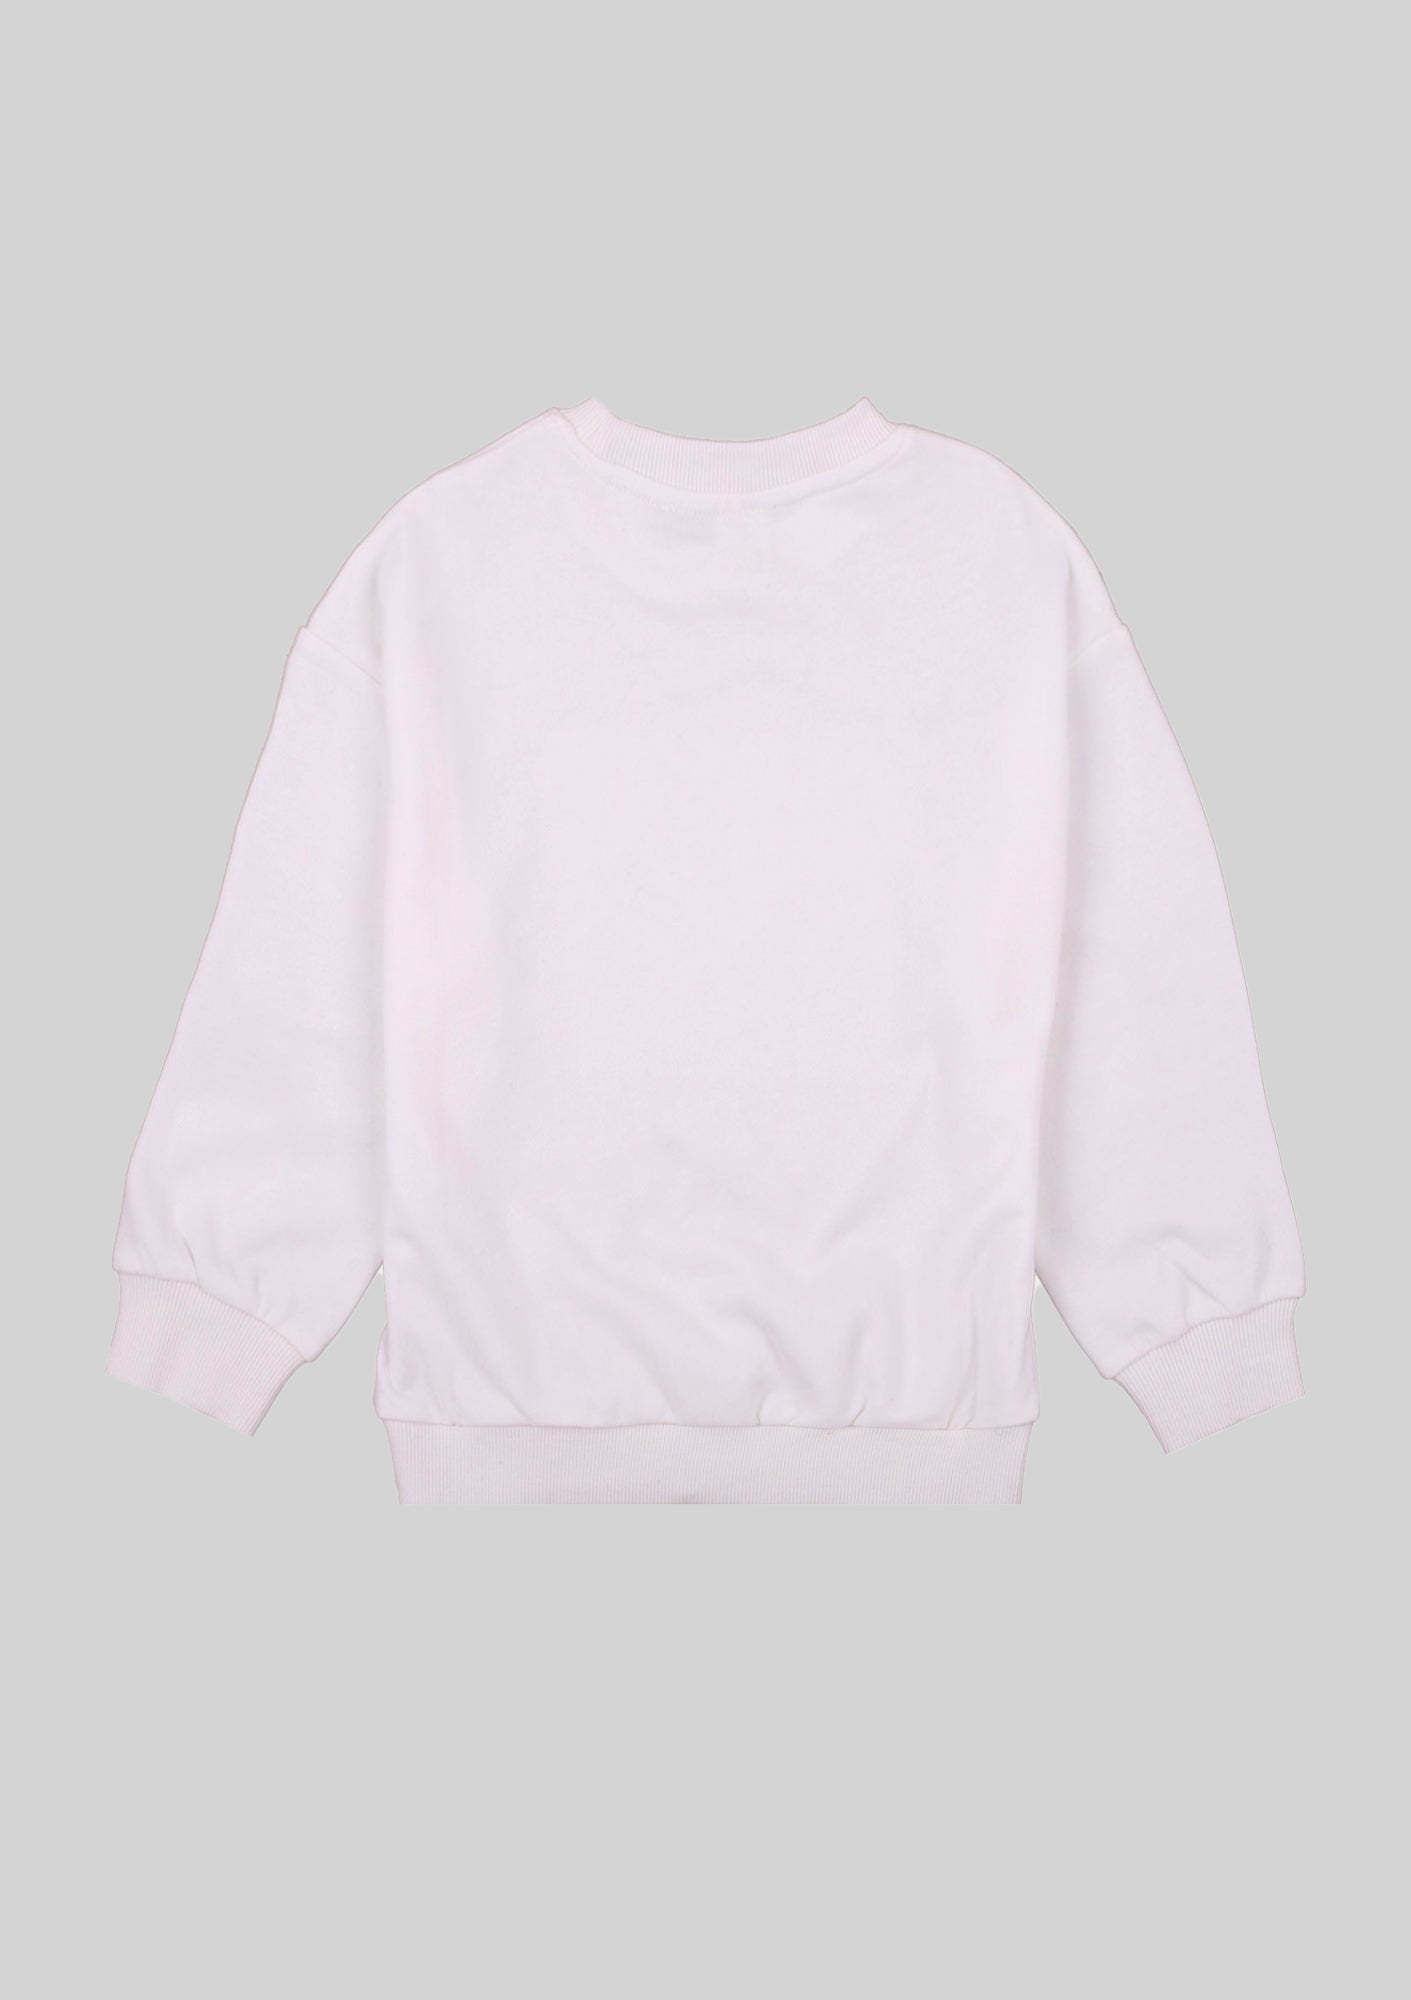 Stay Weird Designer Sweatshirt Ltd. Ed.